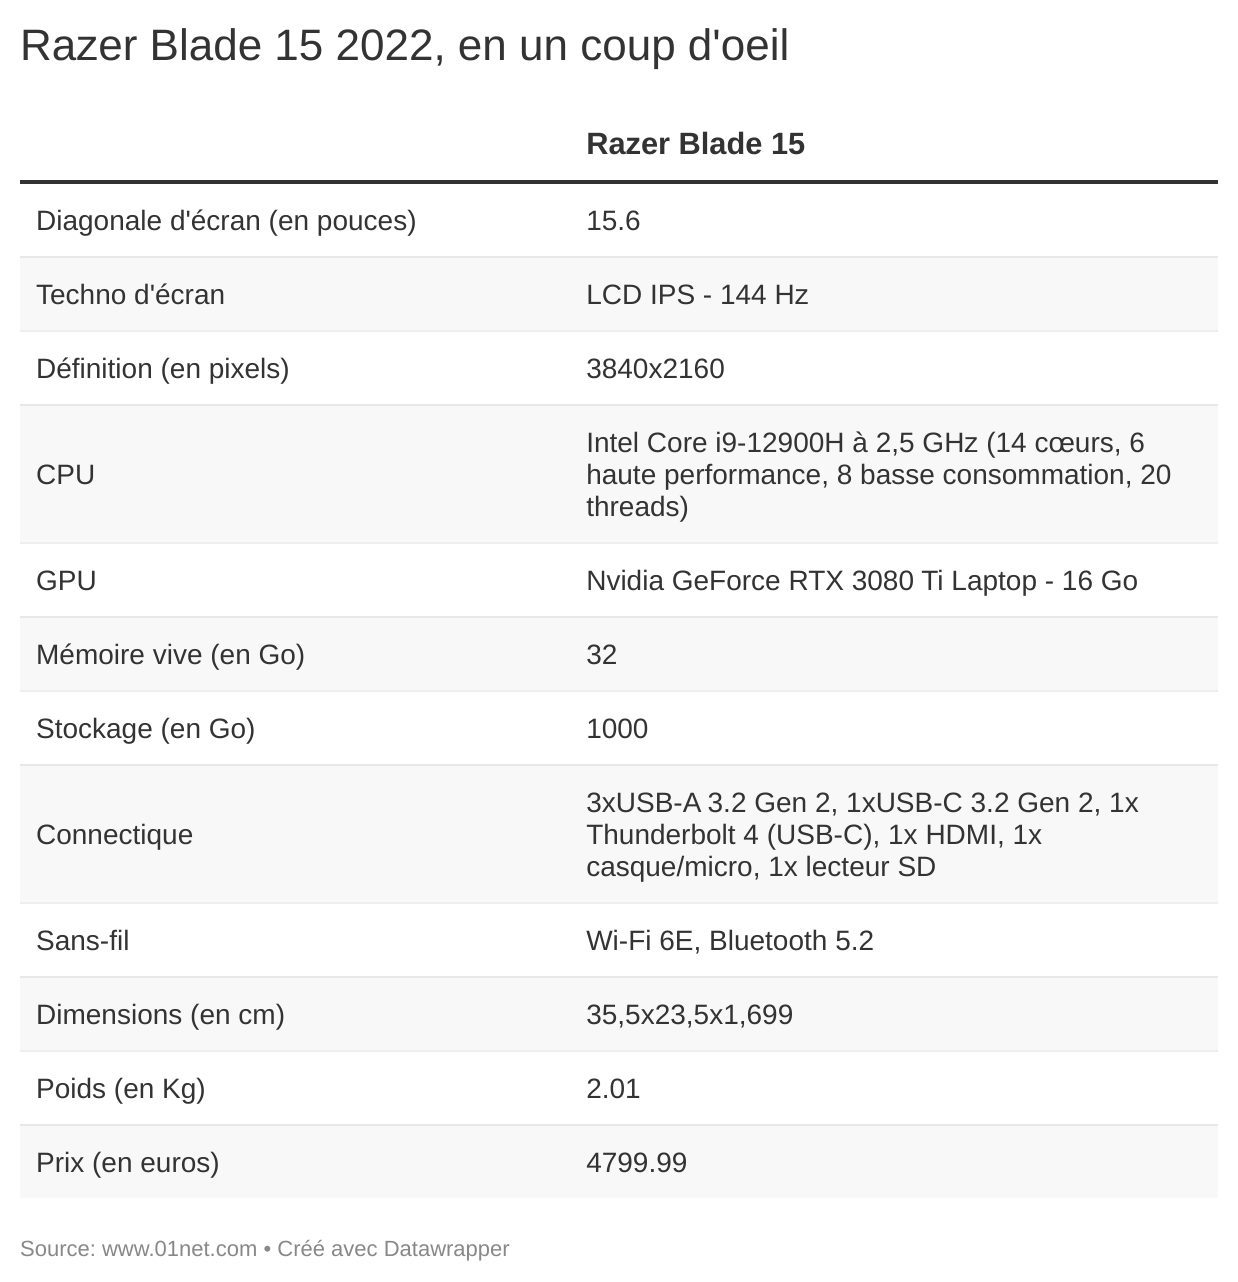 Le Razer Blade 15 2022, en un coup d'oeil.